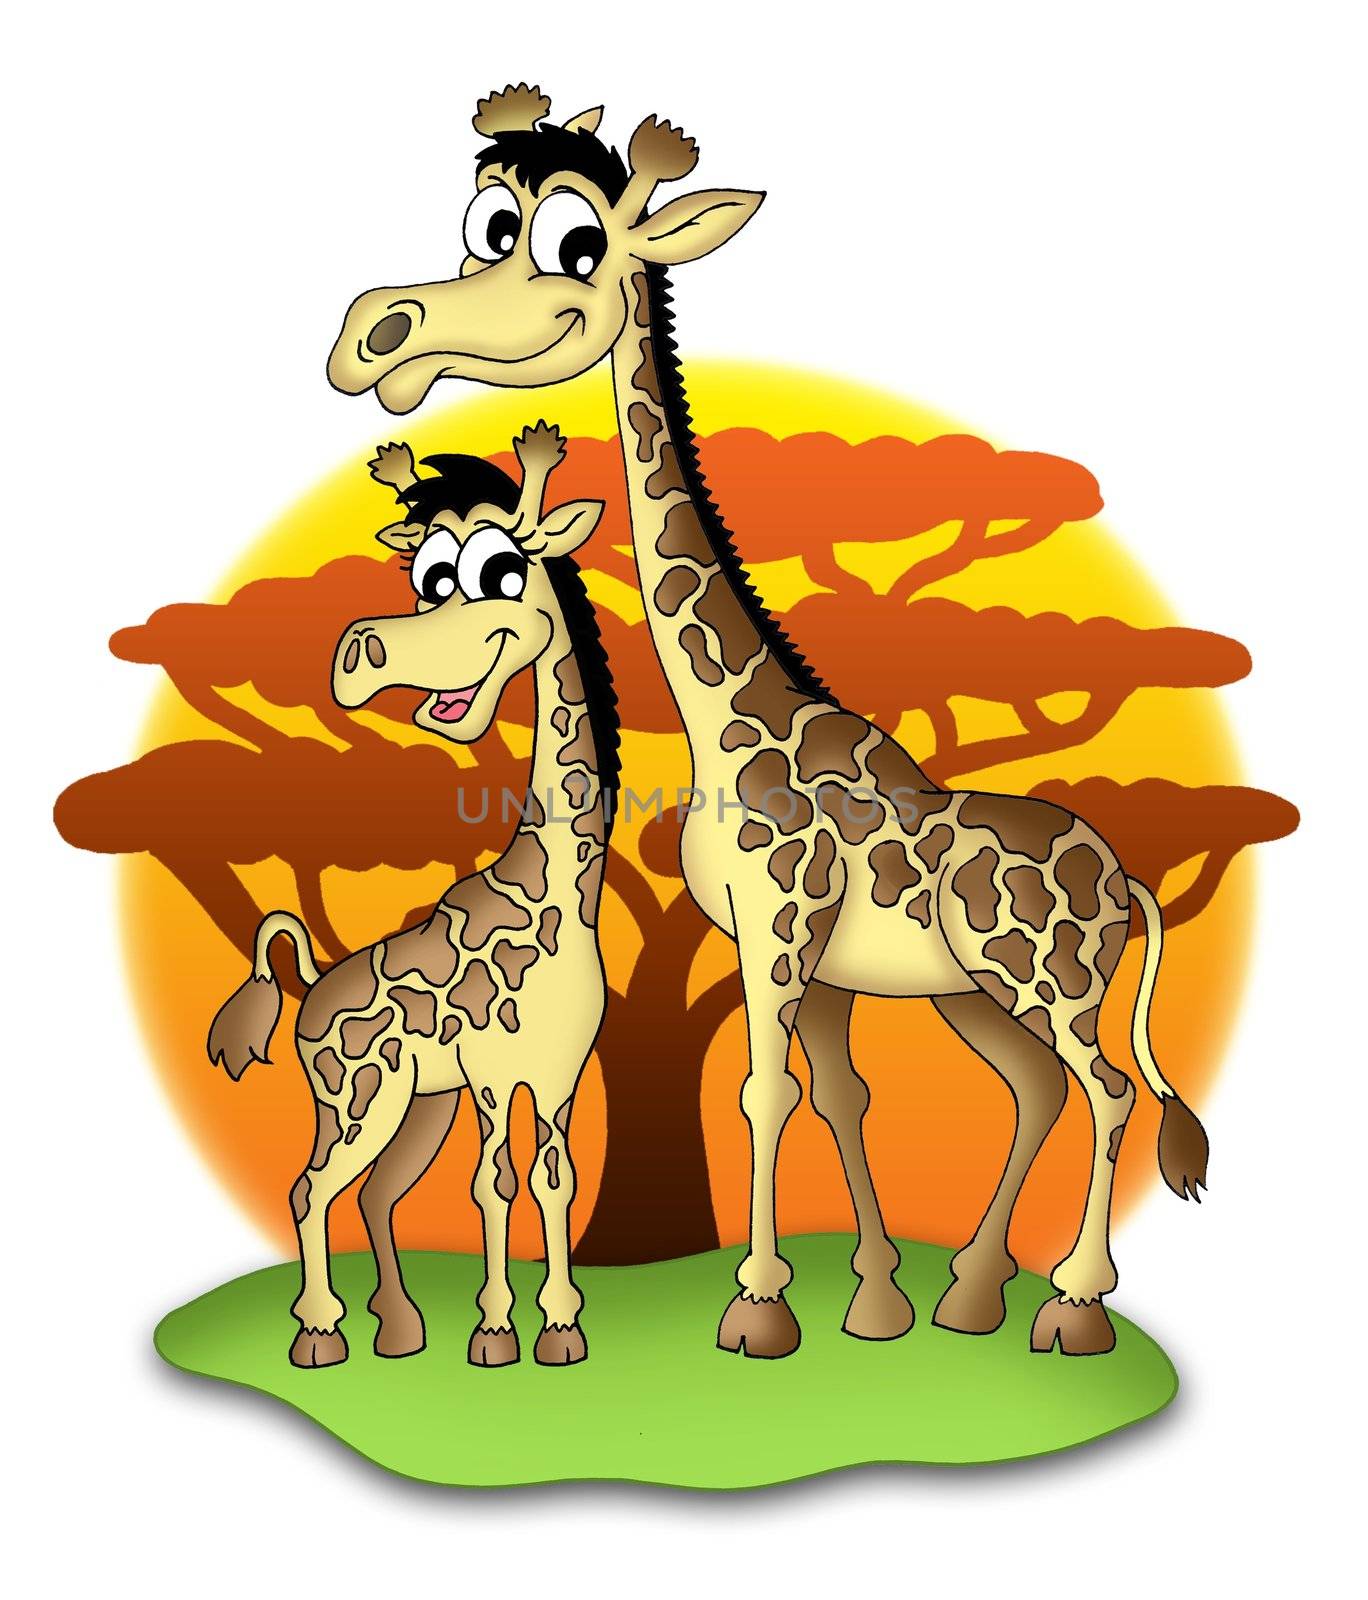 Giraffes by clairev